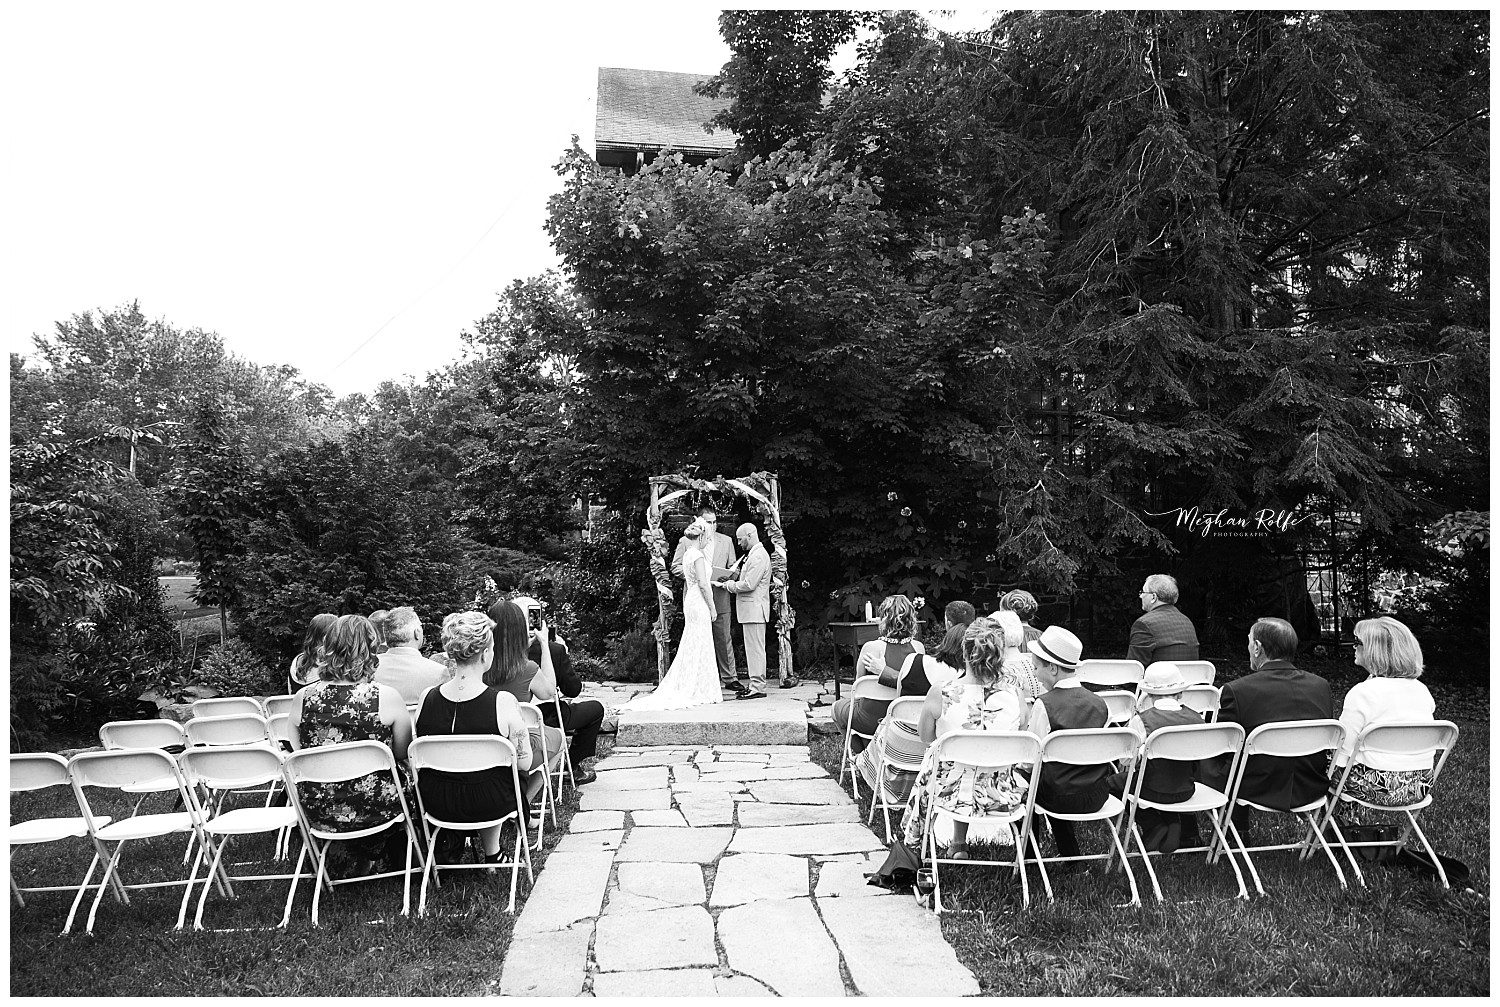 Intimate Asheville Wedding Photographer